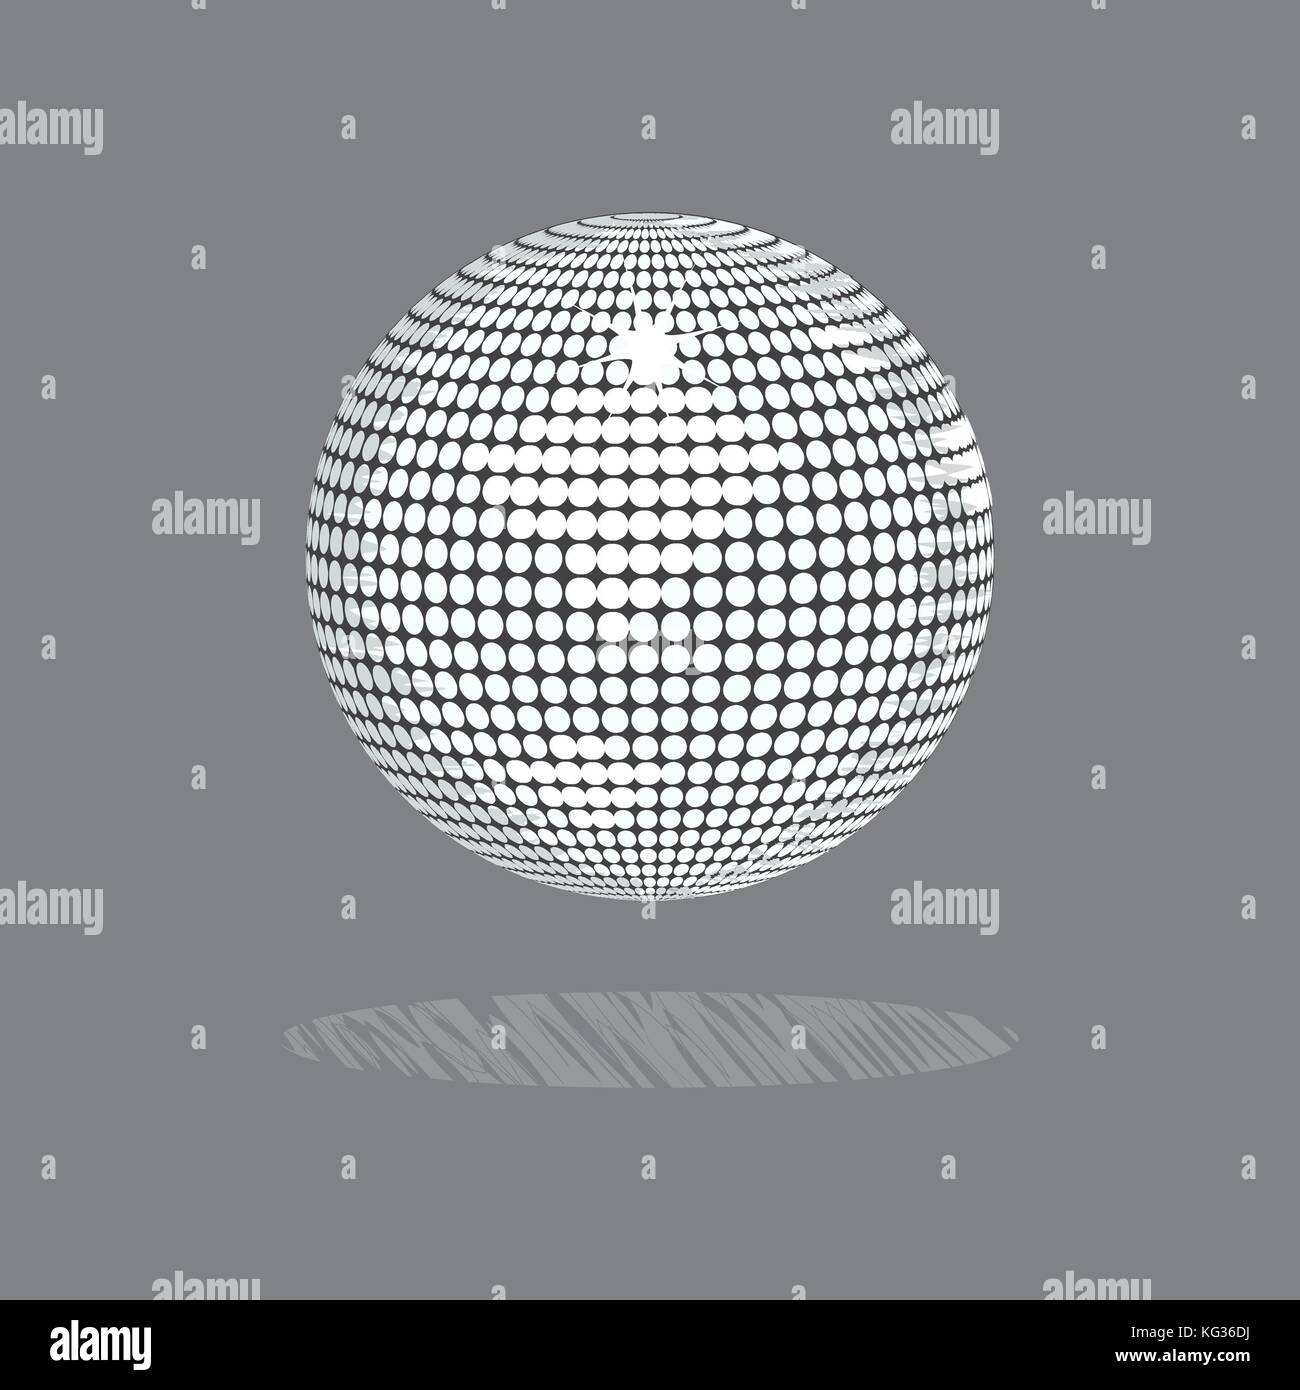 Le style de dessin illustration 2d d'une boule disco blanc avec rayures ombre sur fond gris Illustration de Vecteur